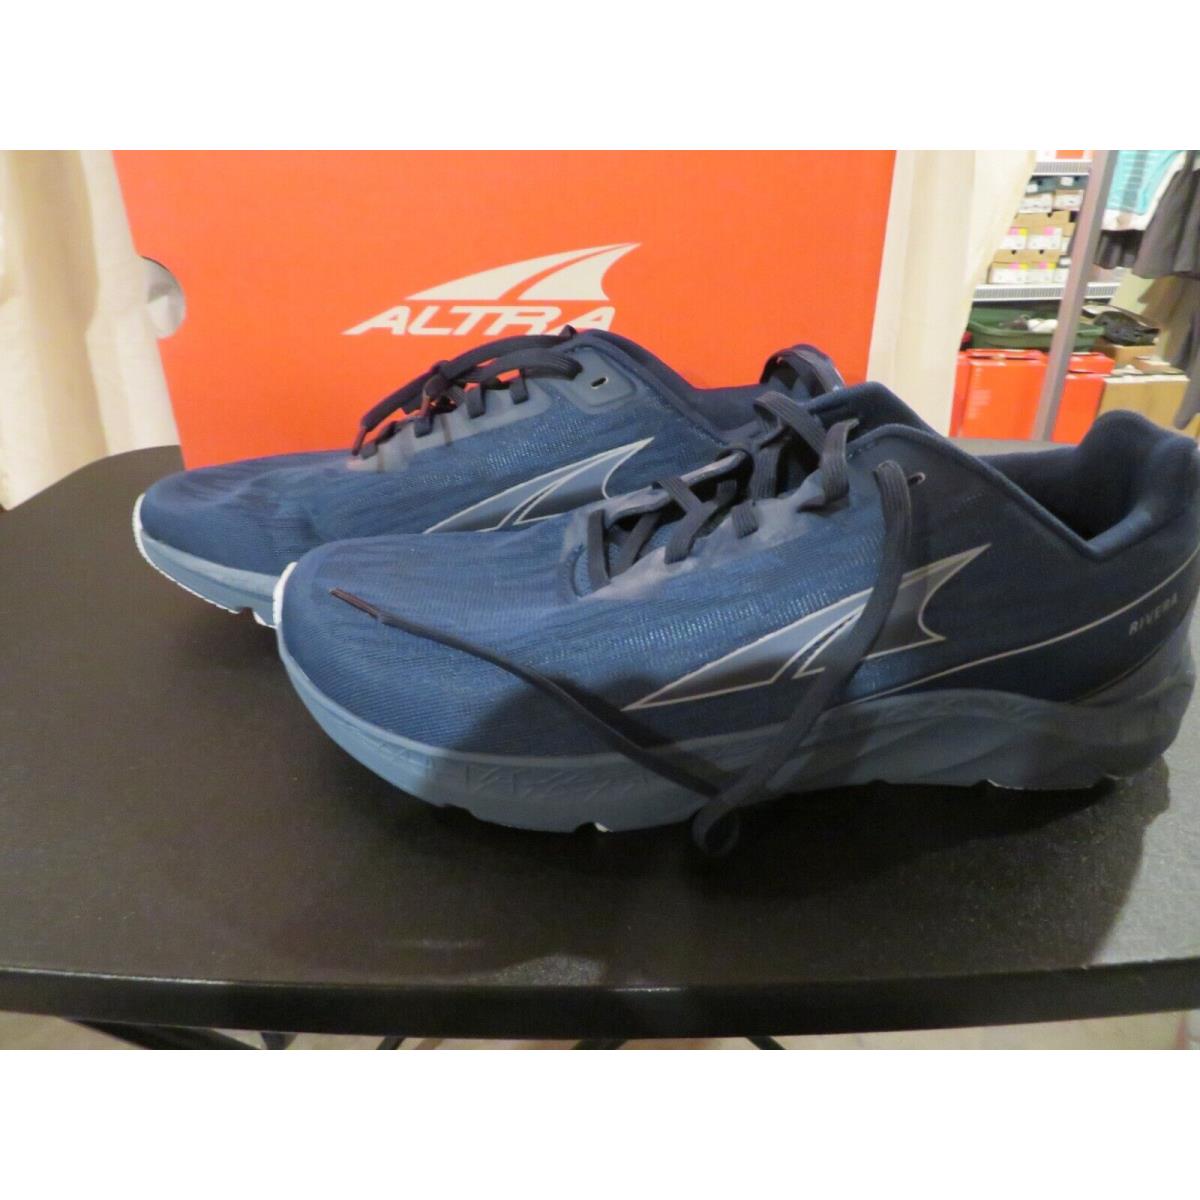 Mens Blue Altra Rivera Tennis Shoes 8.5